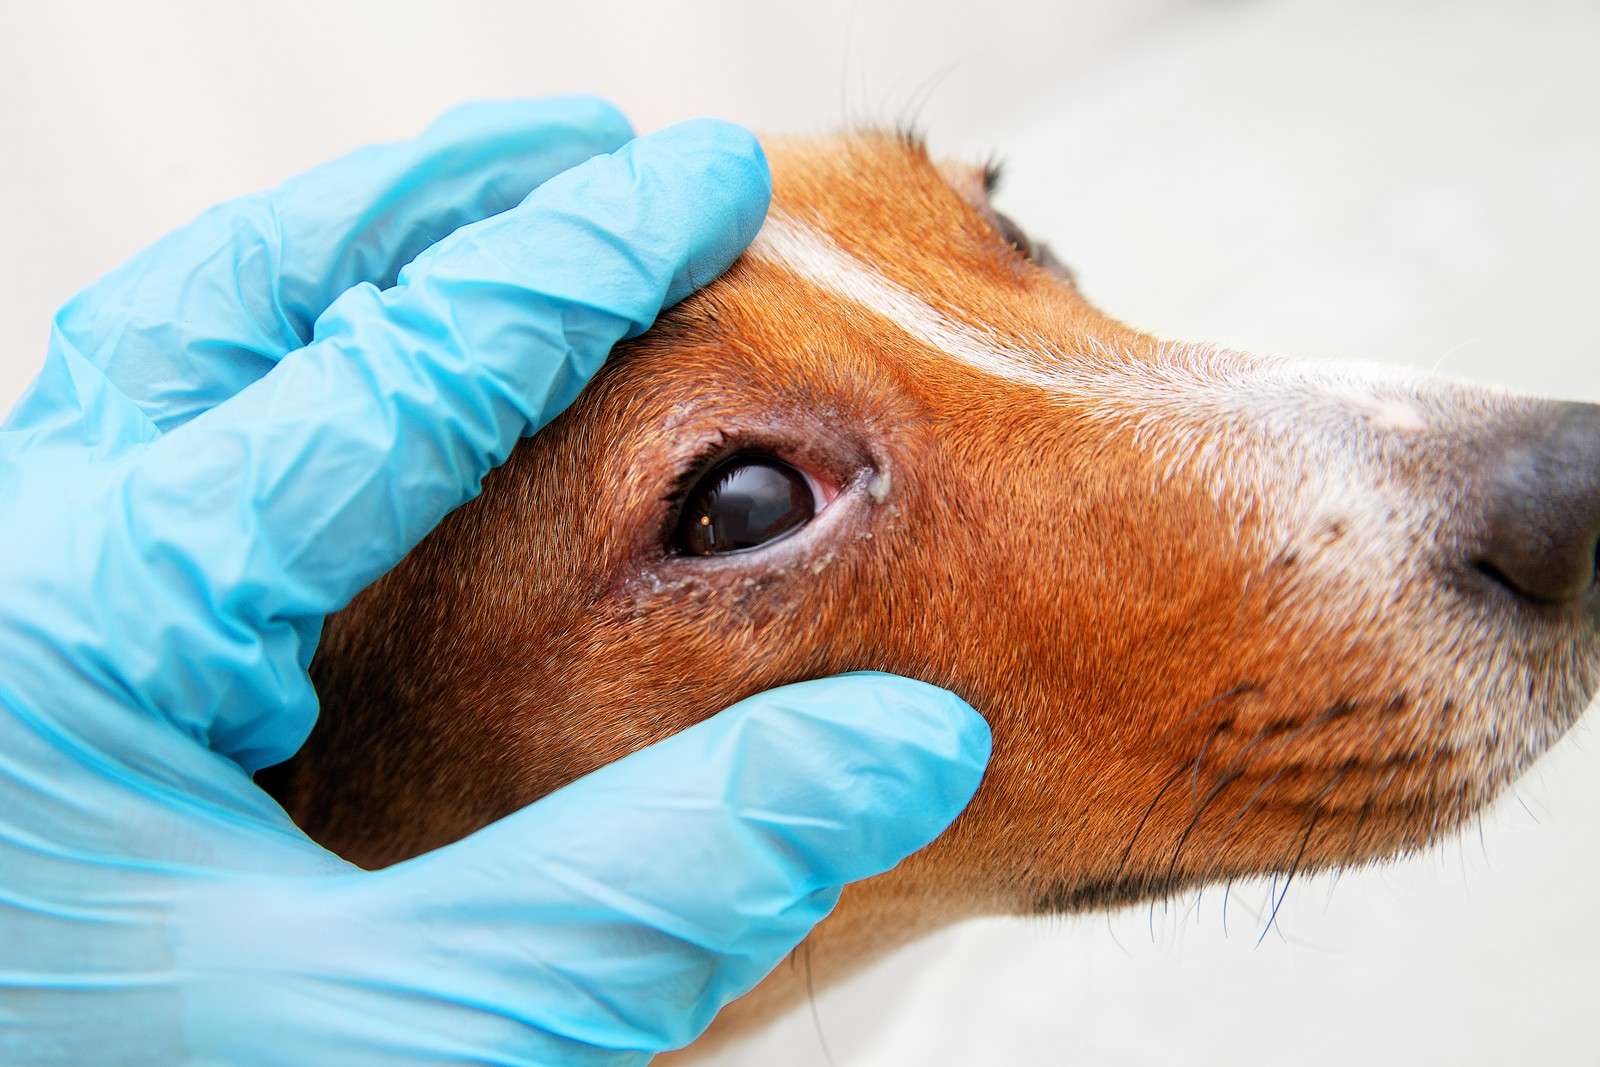 Weclhe Ursachen können rote Augen beim Hund haben?